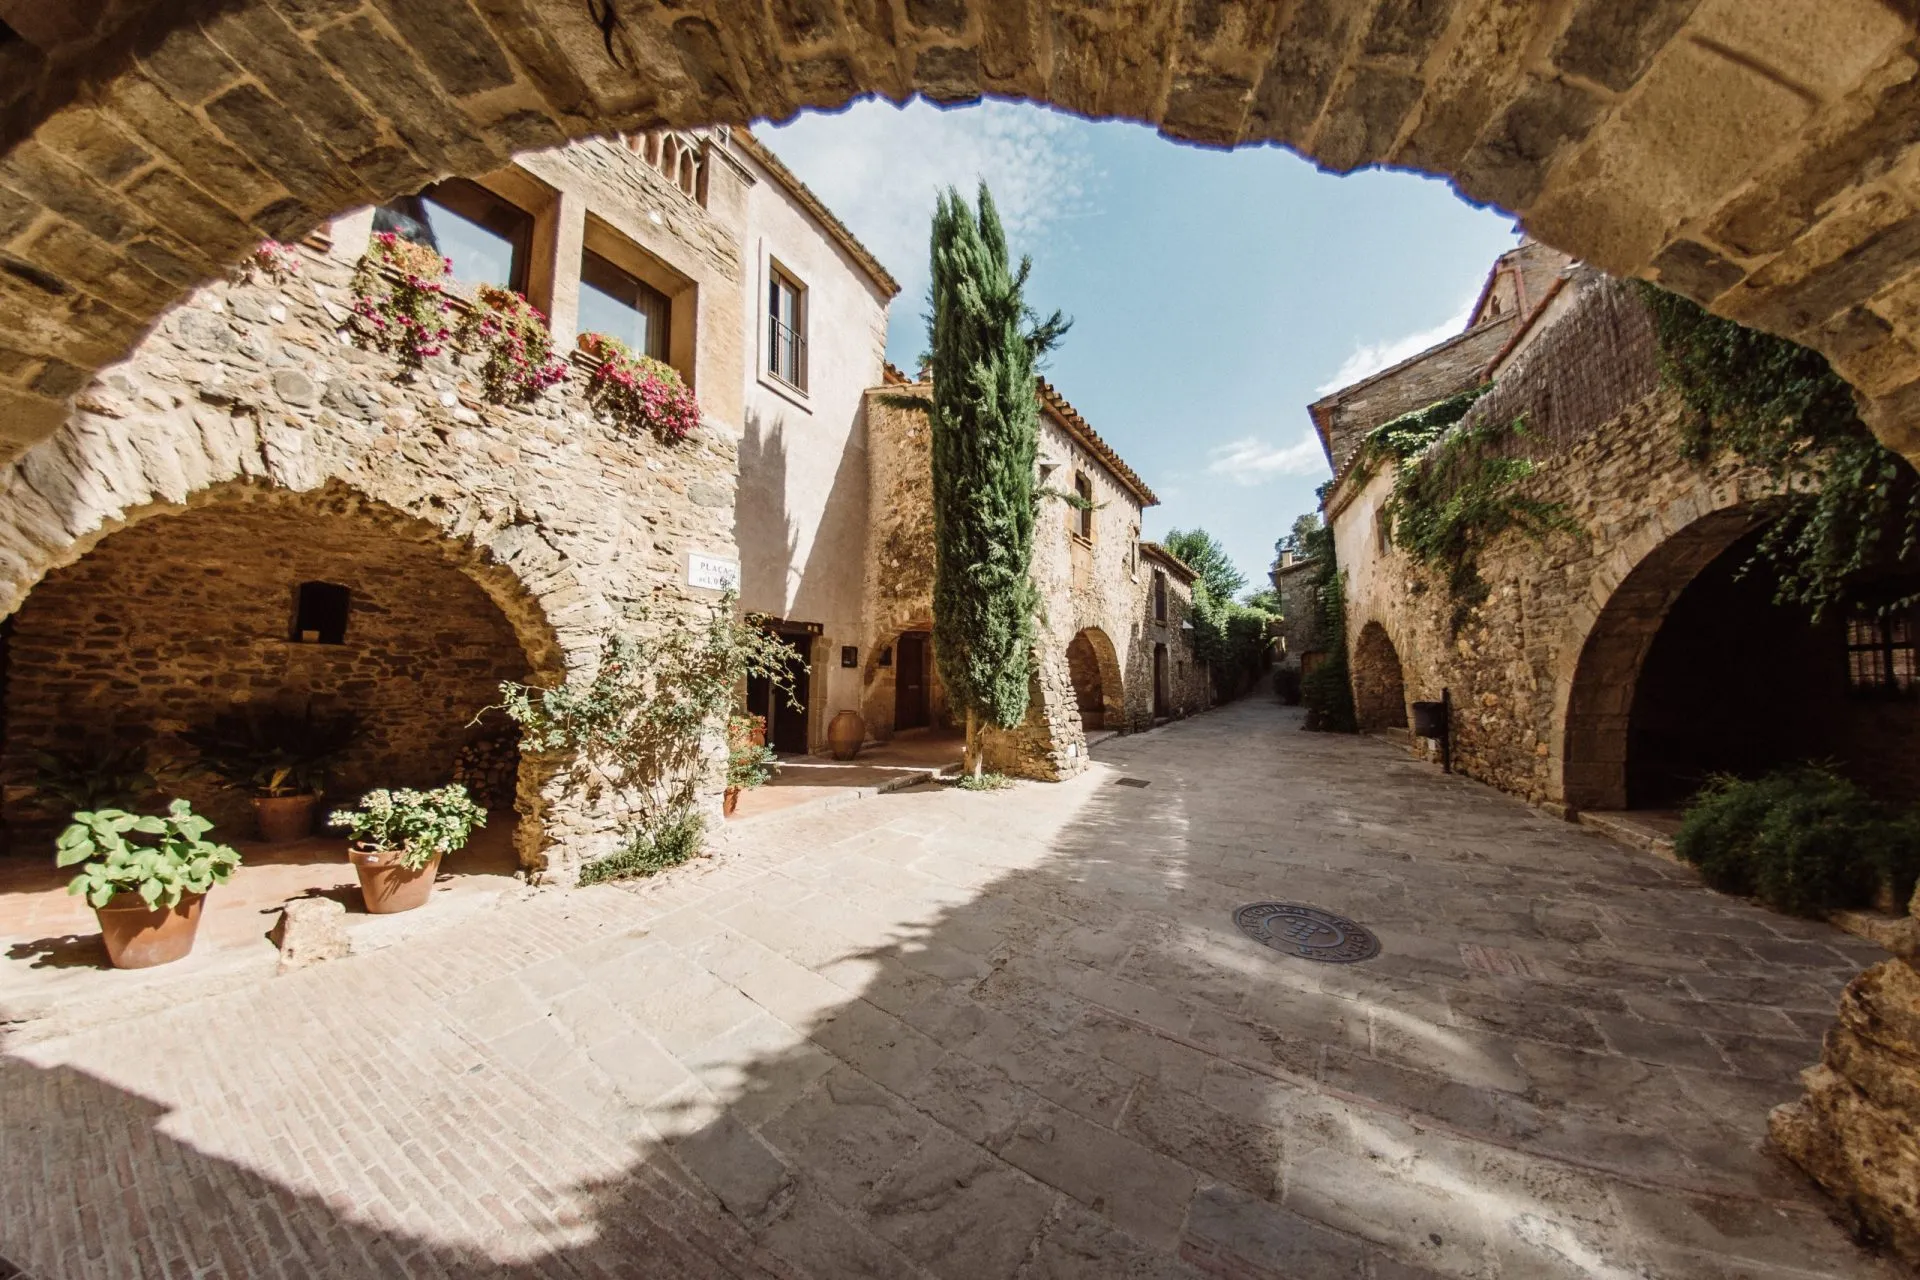 Middelalder- og turistbyen Monells på Costa Brava, nær Girona, nord i Catalonia, Spania.